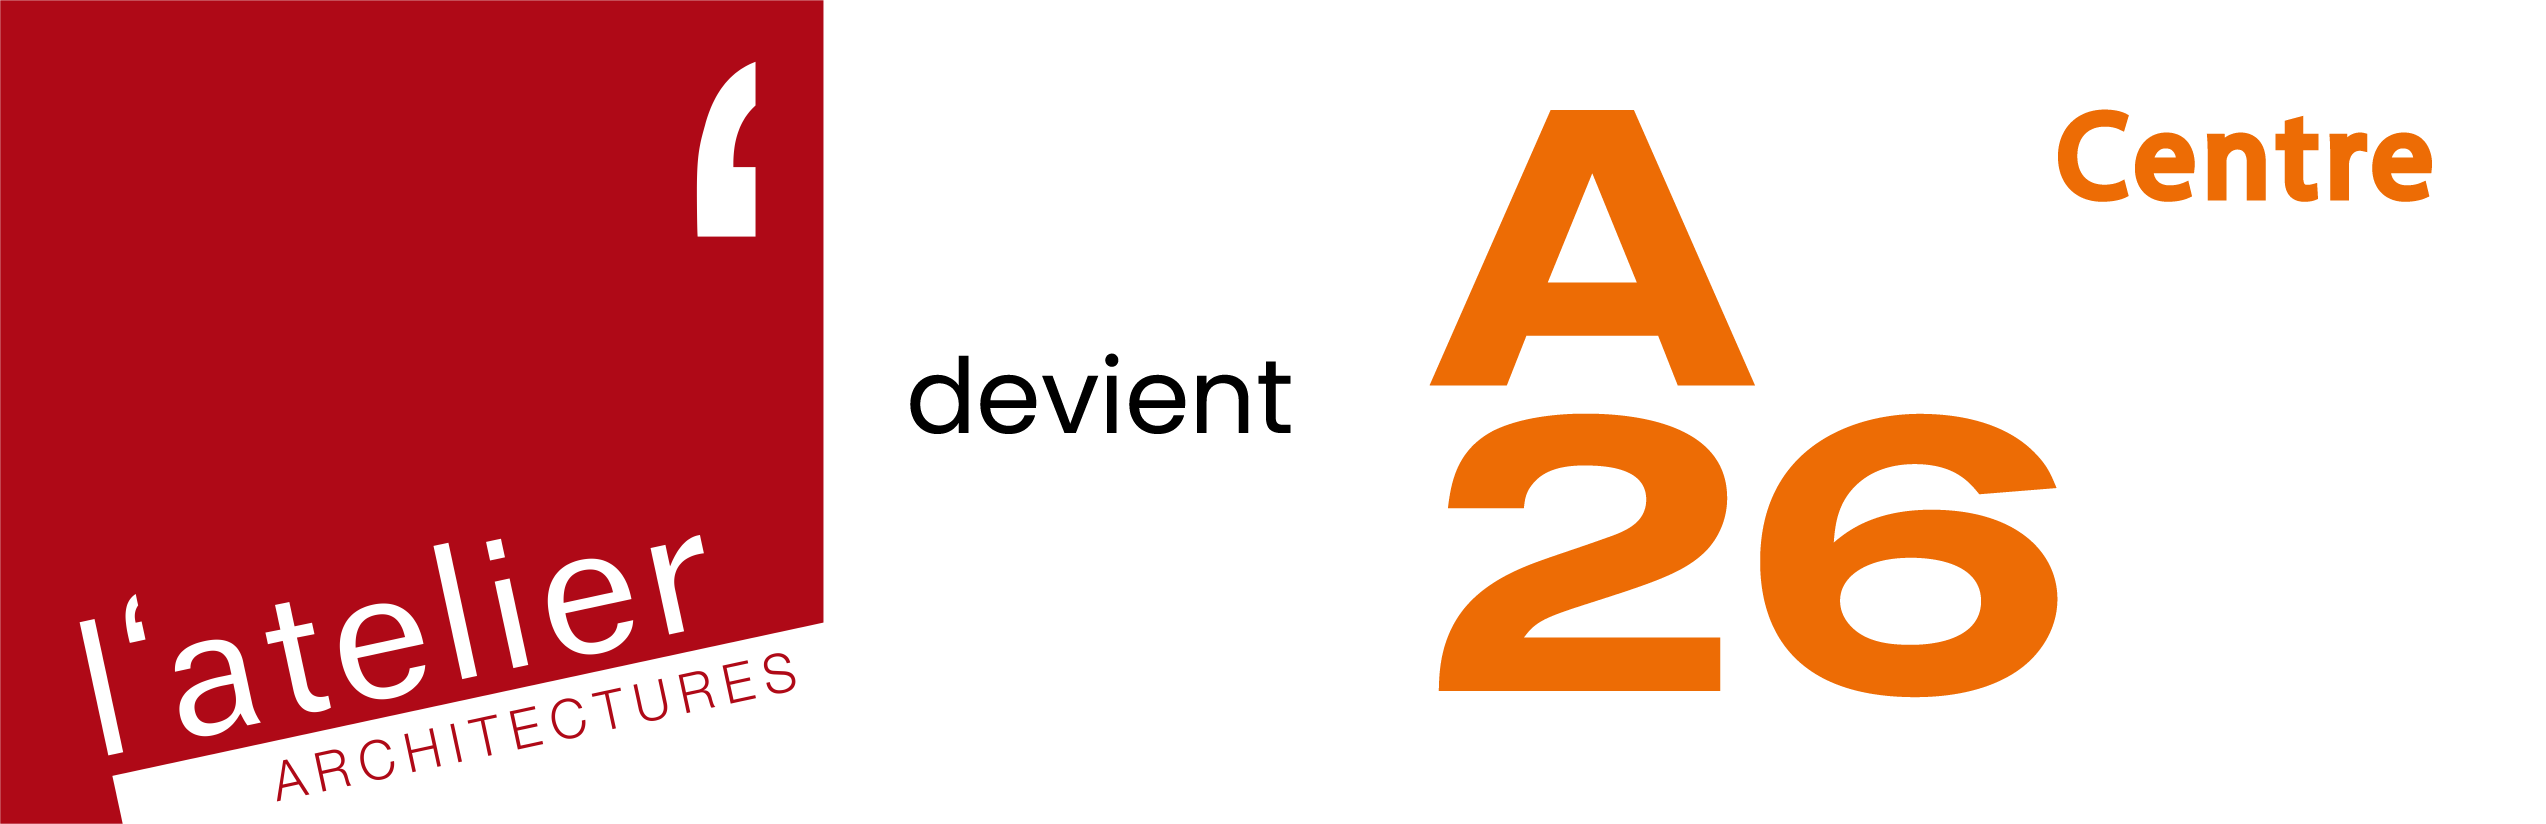 AAP devient A26 Centre (1) 3